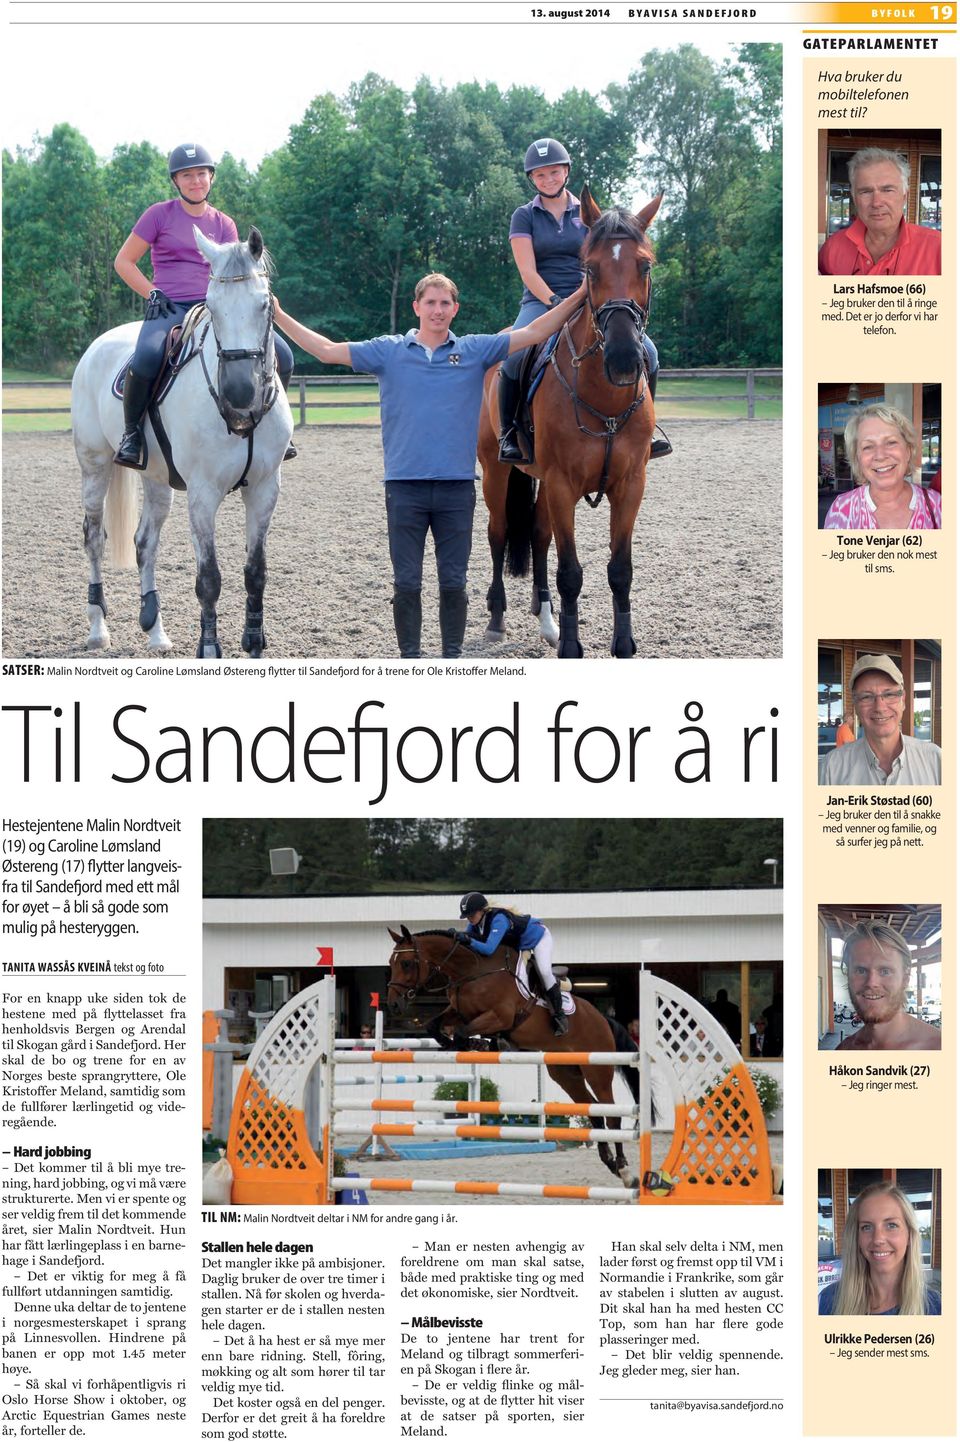 Til Sandefjord for å ri Hestejentene Malin Nordtveit (19) og Caroline Lømsland Østereng (17) flytter langveisfra til Sandefjord med ett mål for øyet å bli så gode som mulig på hesteryggen.